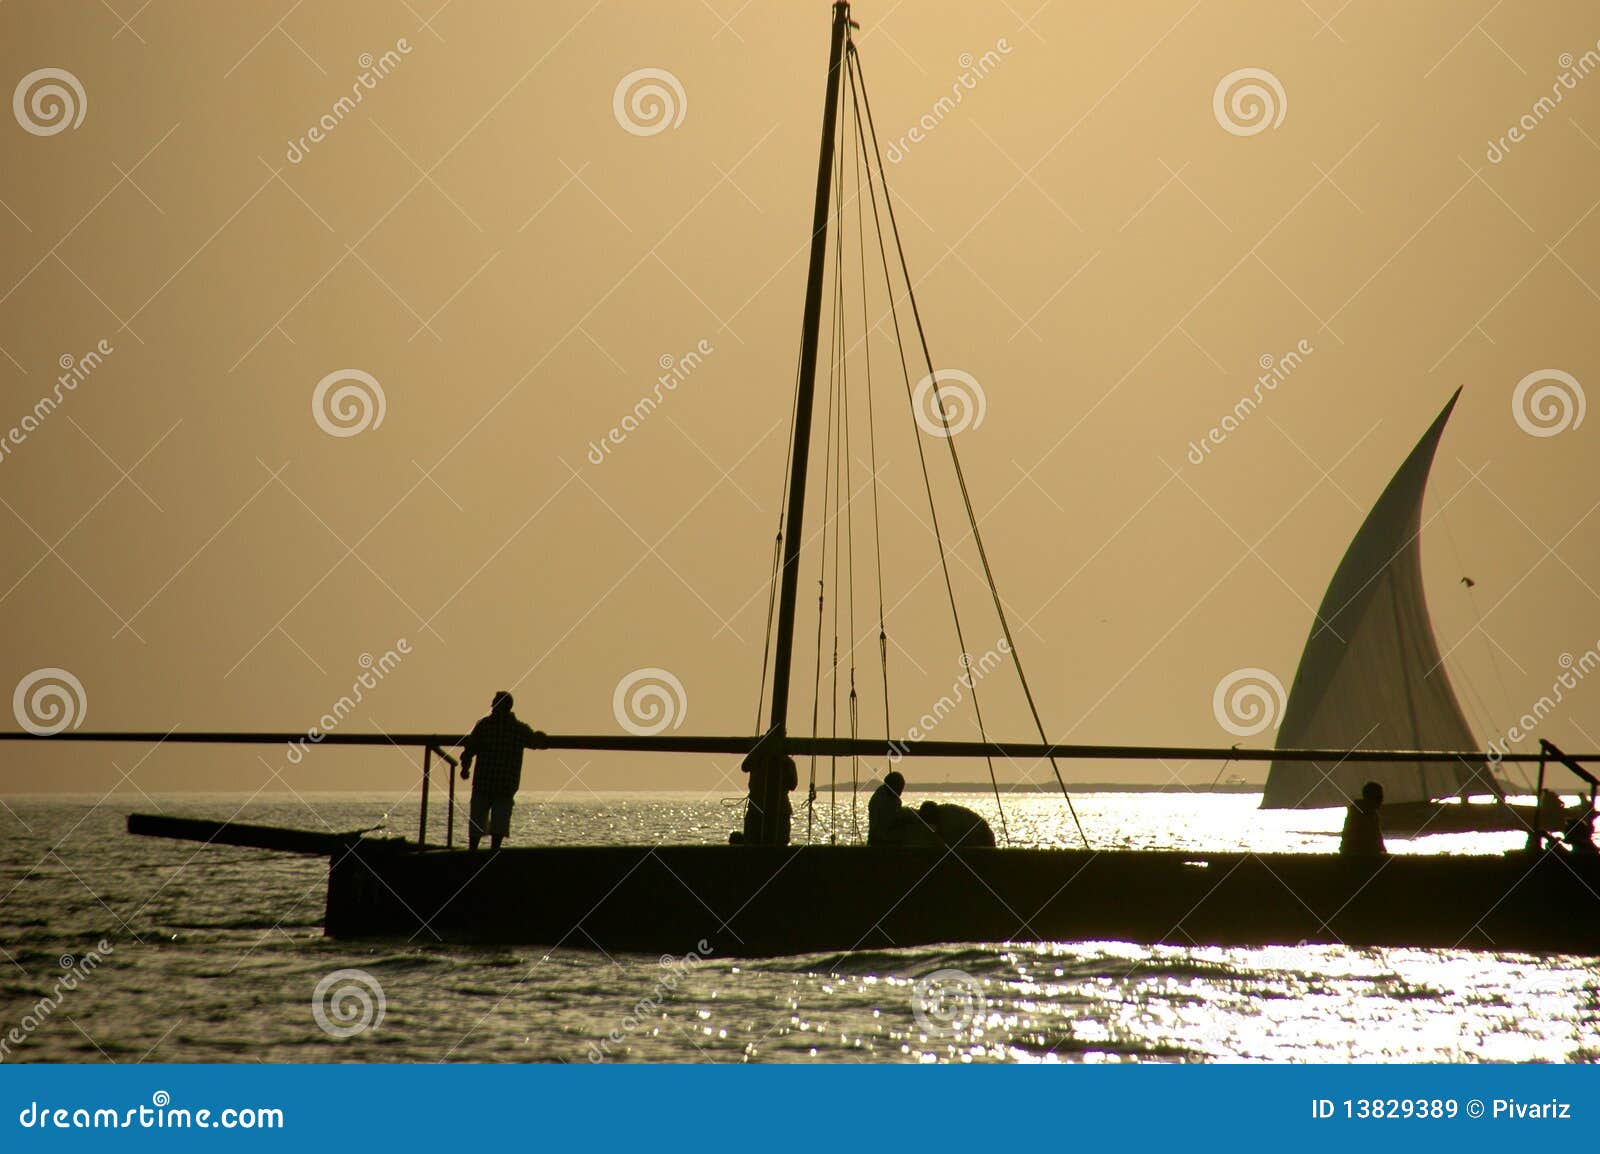 arabian sailors on a dhow